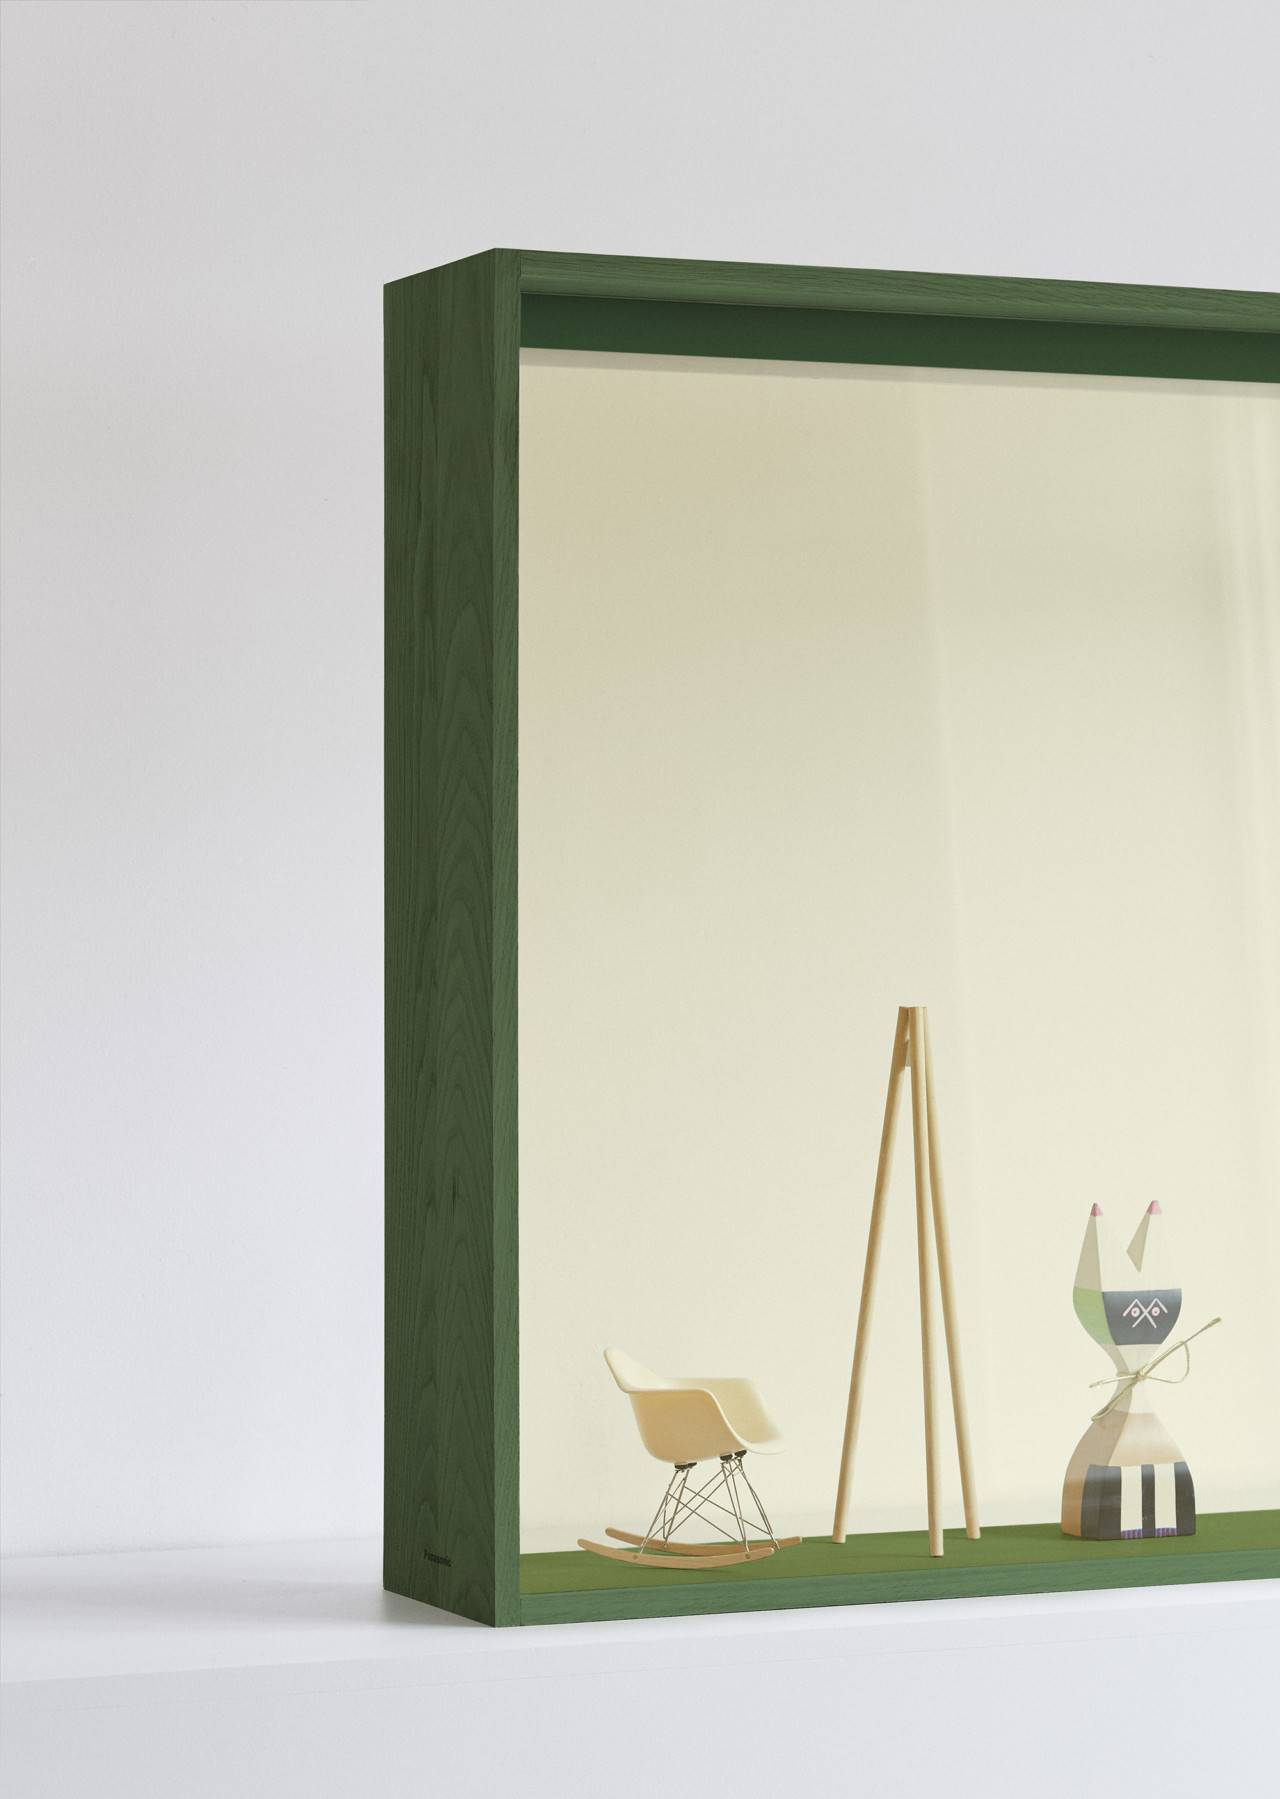 El marco, al ser de madera, se puede pintar del tono deseado, para que encaje al 100% con el mueble sobre el que se ubique.